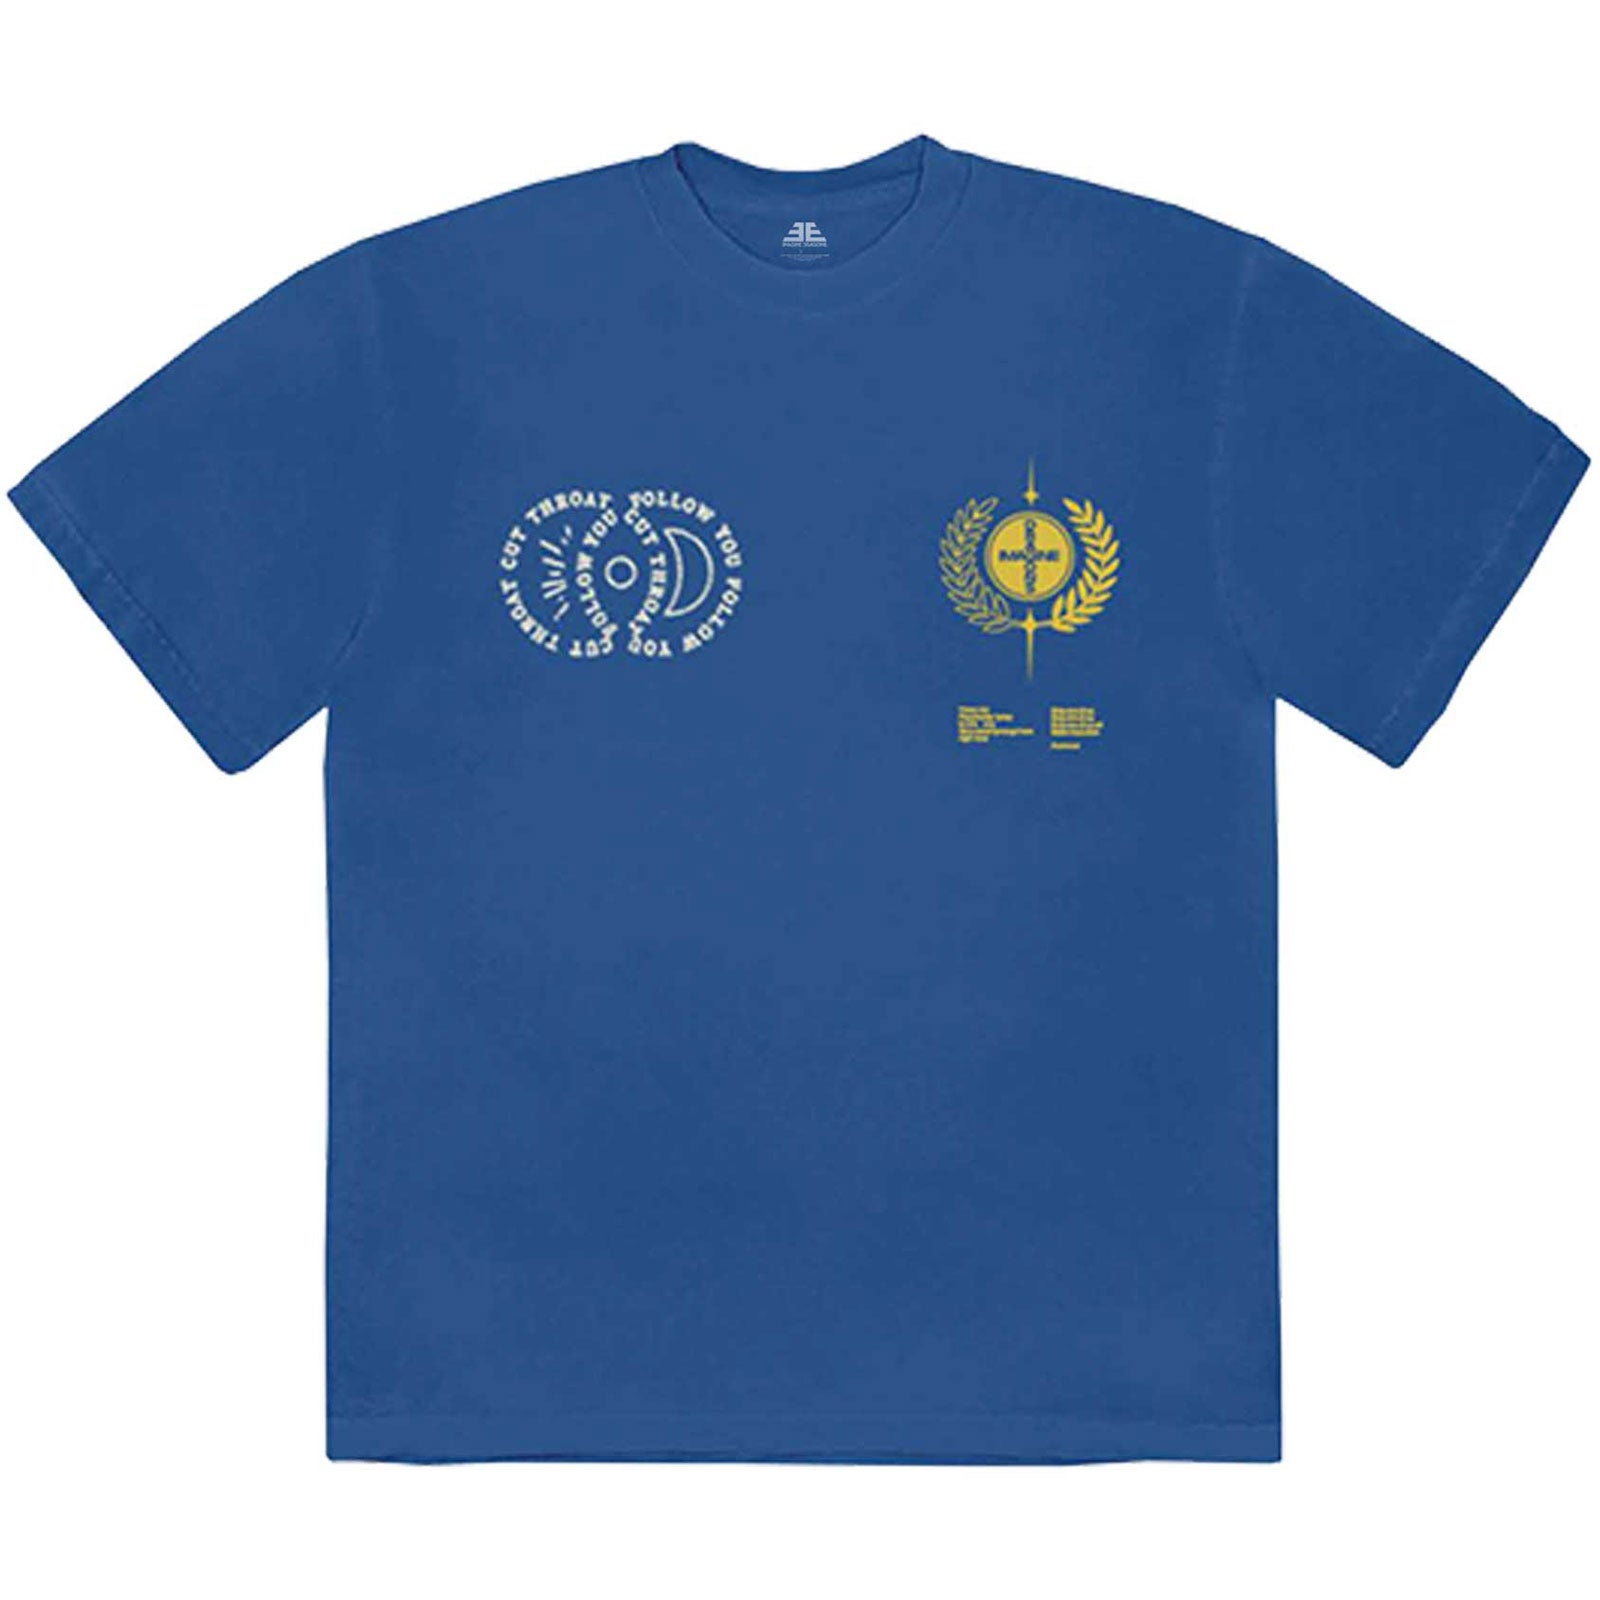 Imagine Dragons T-Shirt - Paroles (impression arrière) - Bleu Unisexe Conception sous Licence Officielle